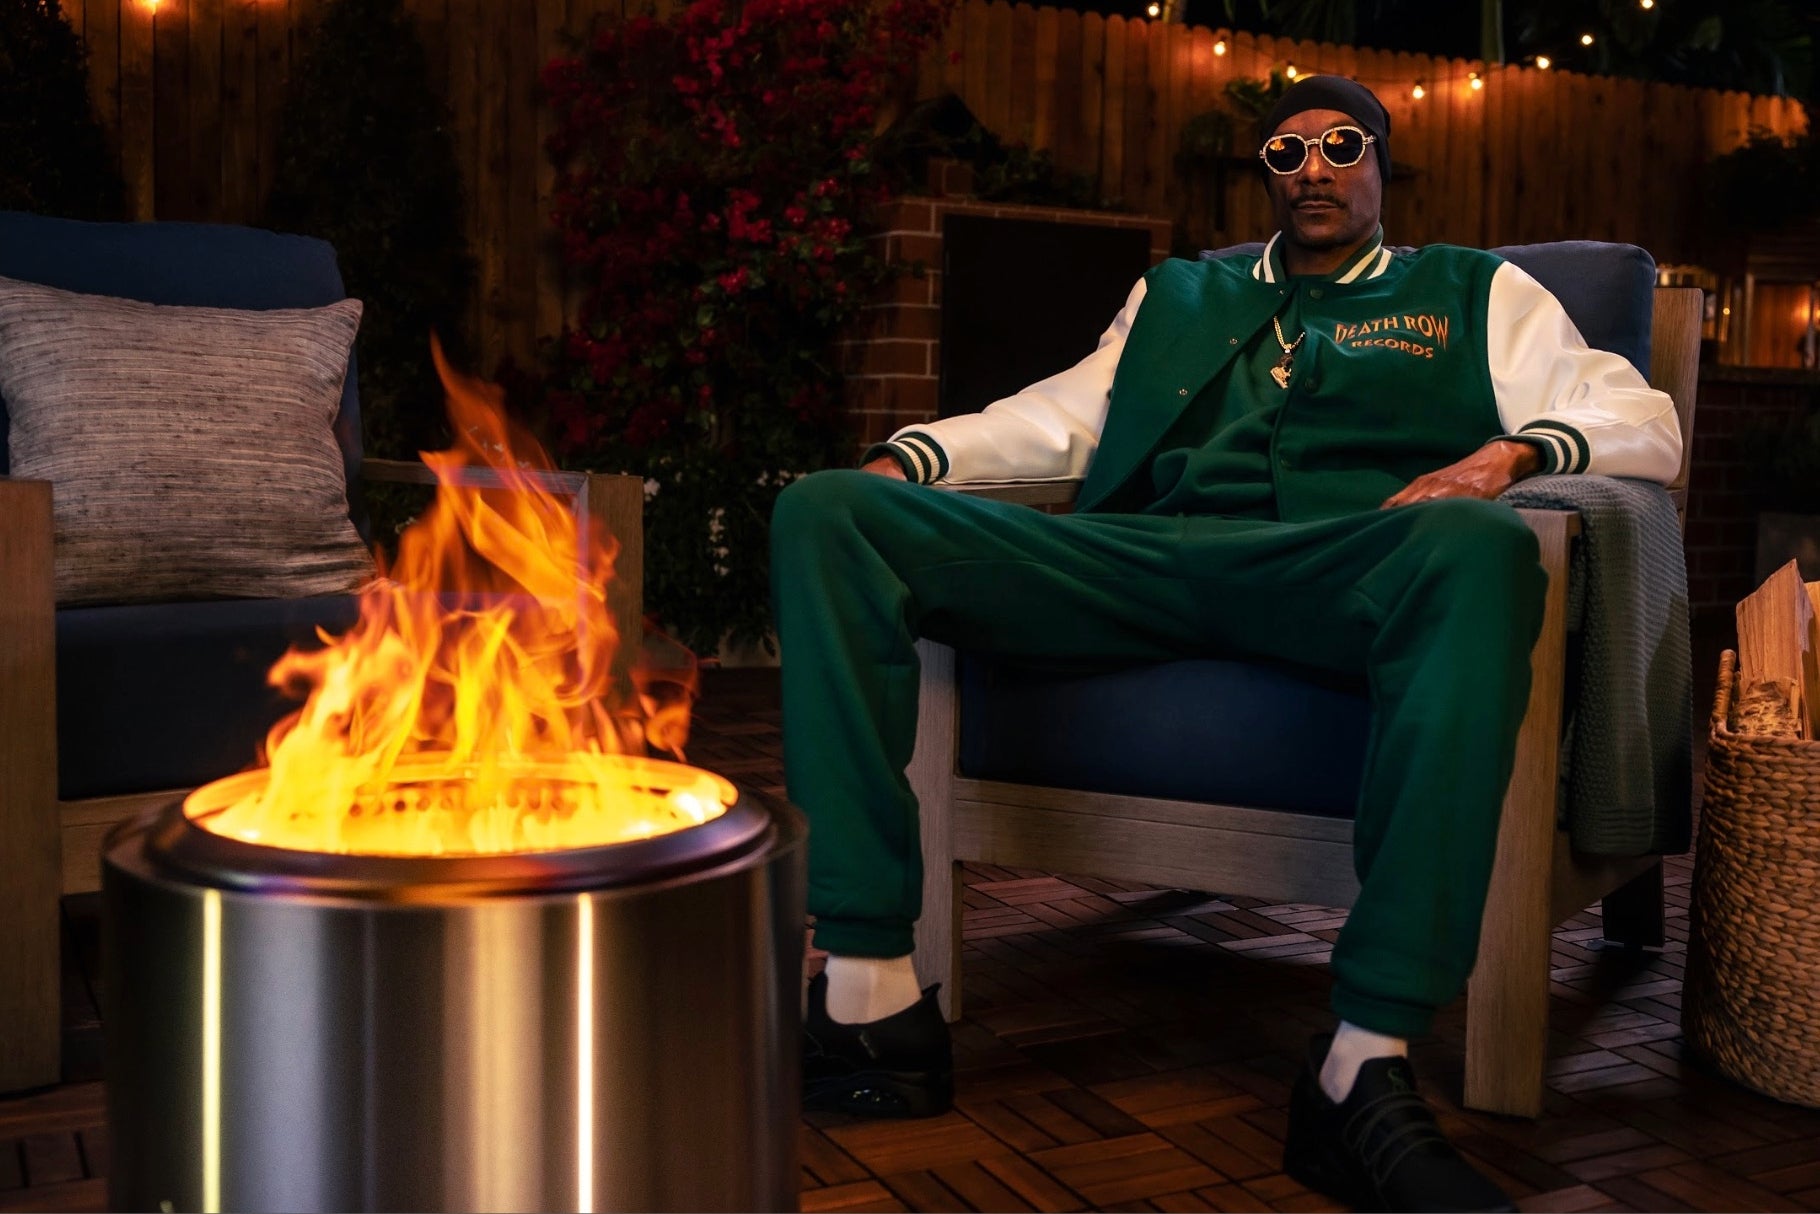 Démission du PDG de Solo Stove Suite à la Campagne "Giving Up Smoke" avec Snoop Dogg